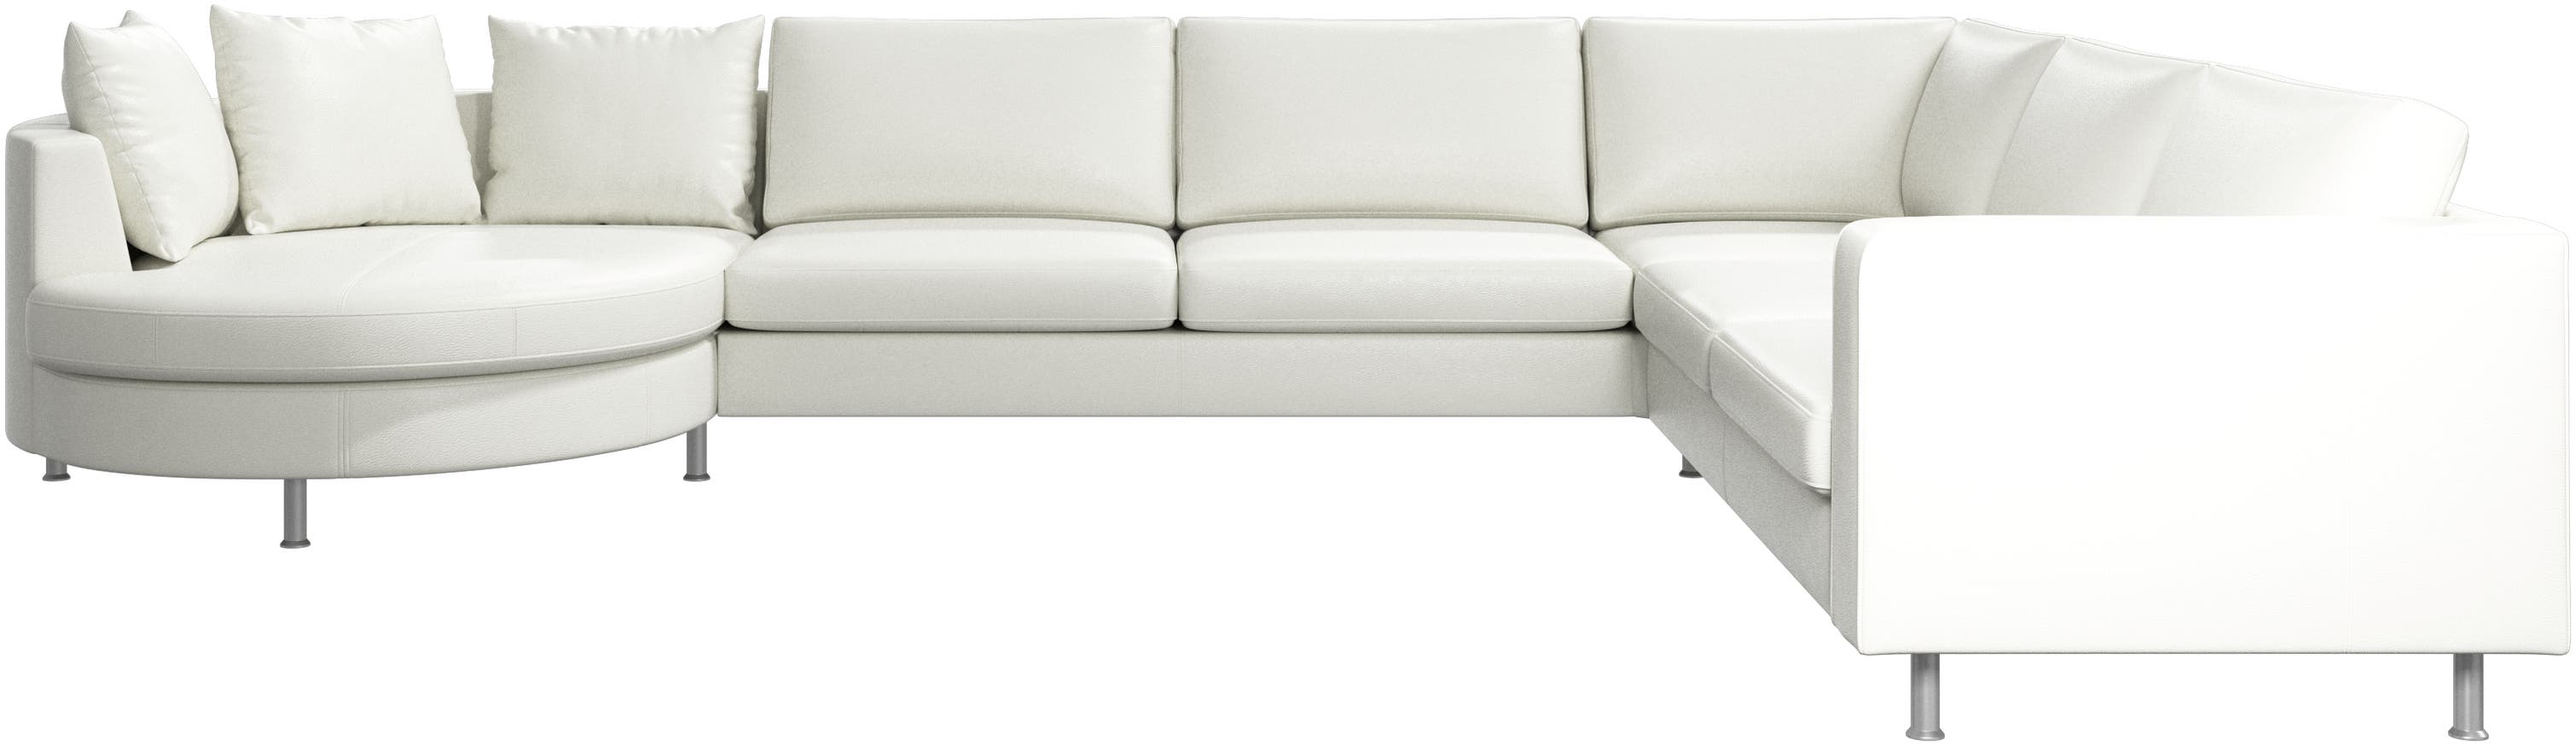 Indivi corner sofa with round resting unit